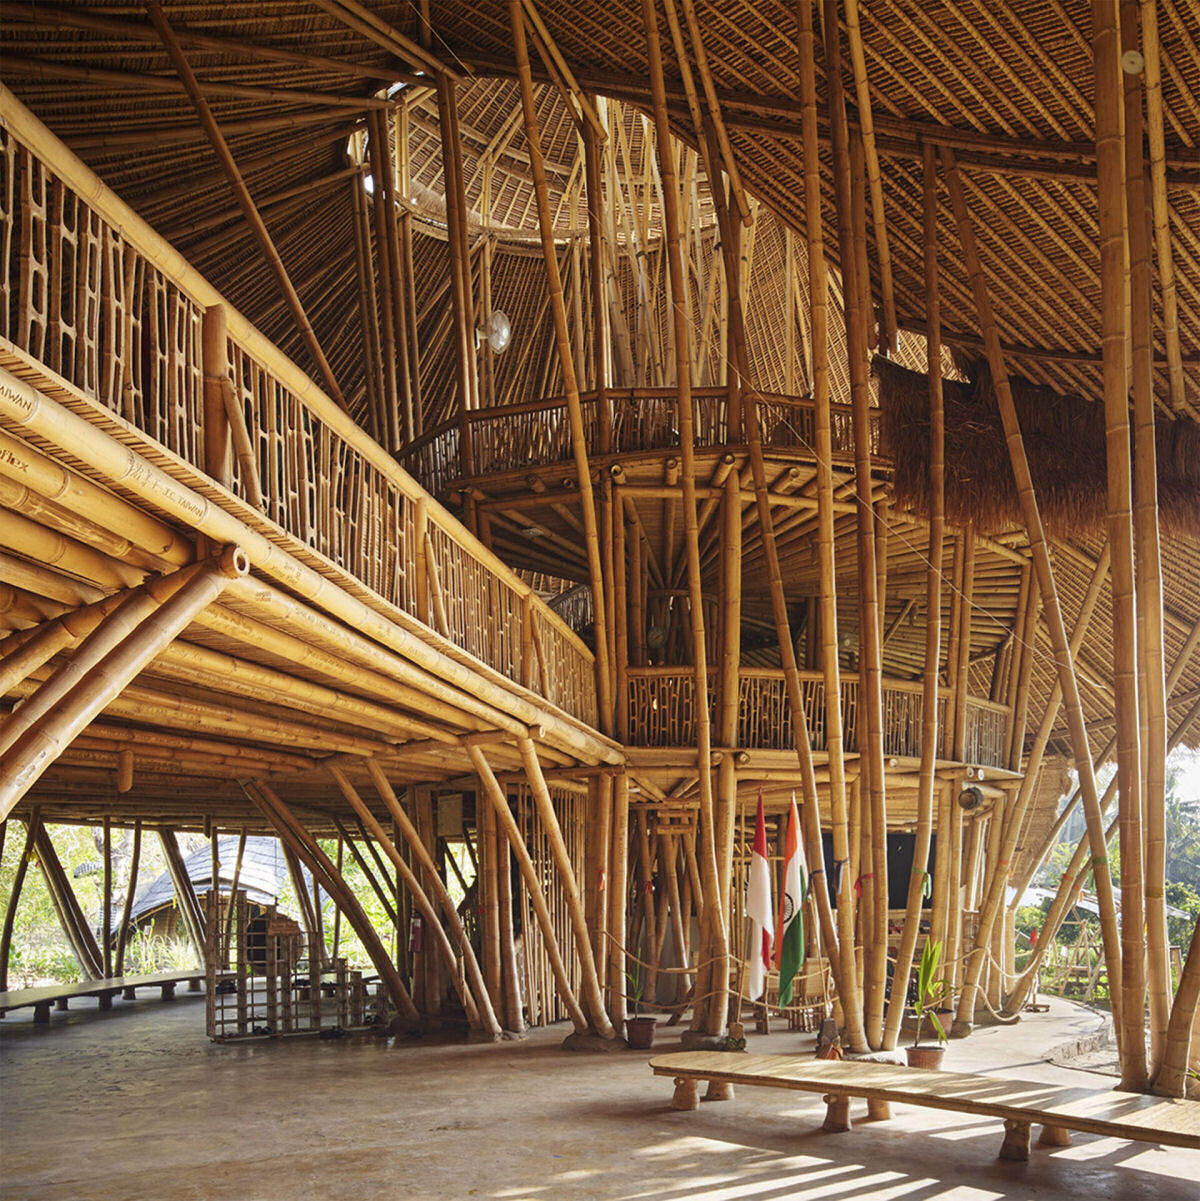 Telhados em espiral cobrem uma escola de vários andares feita inteiramente de bambu em Bali 01